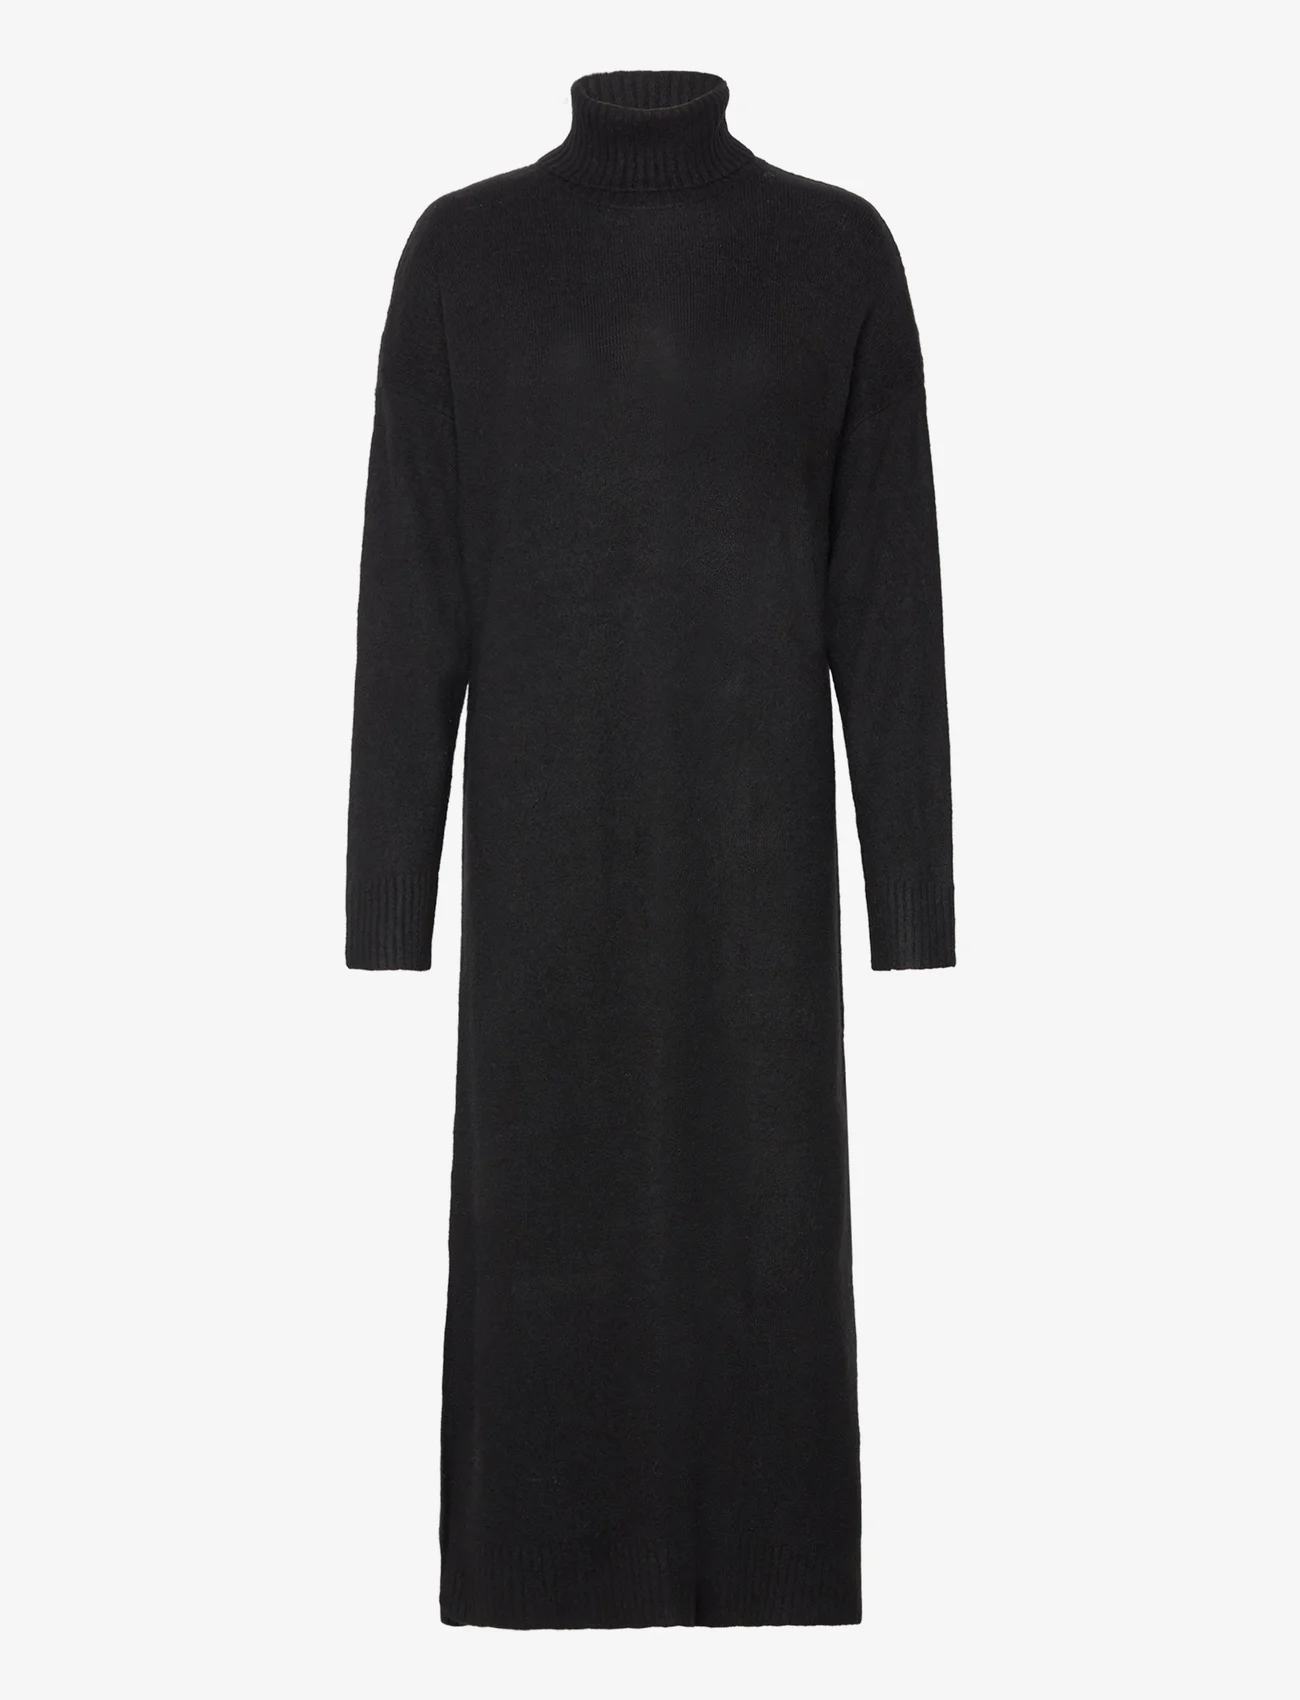 A-View - Penny knit dress - sukienki dzianinowe - black - 0